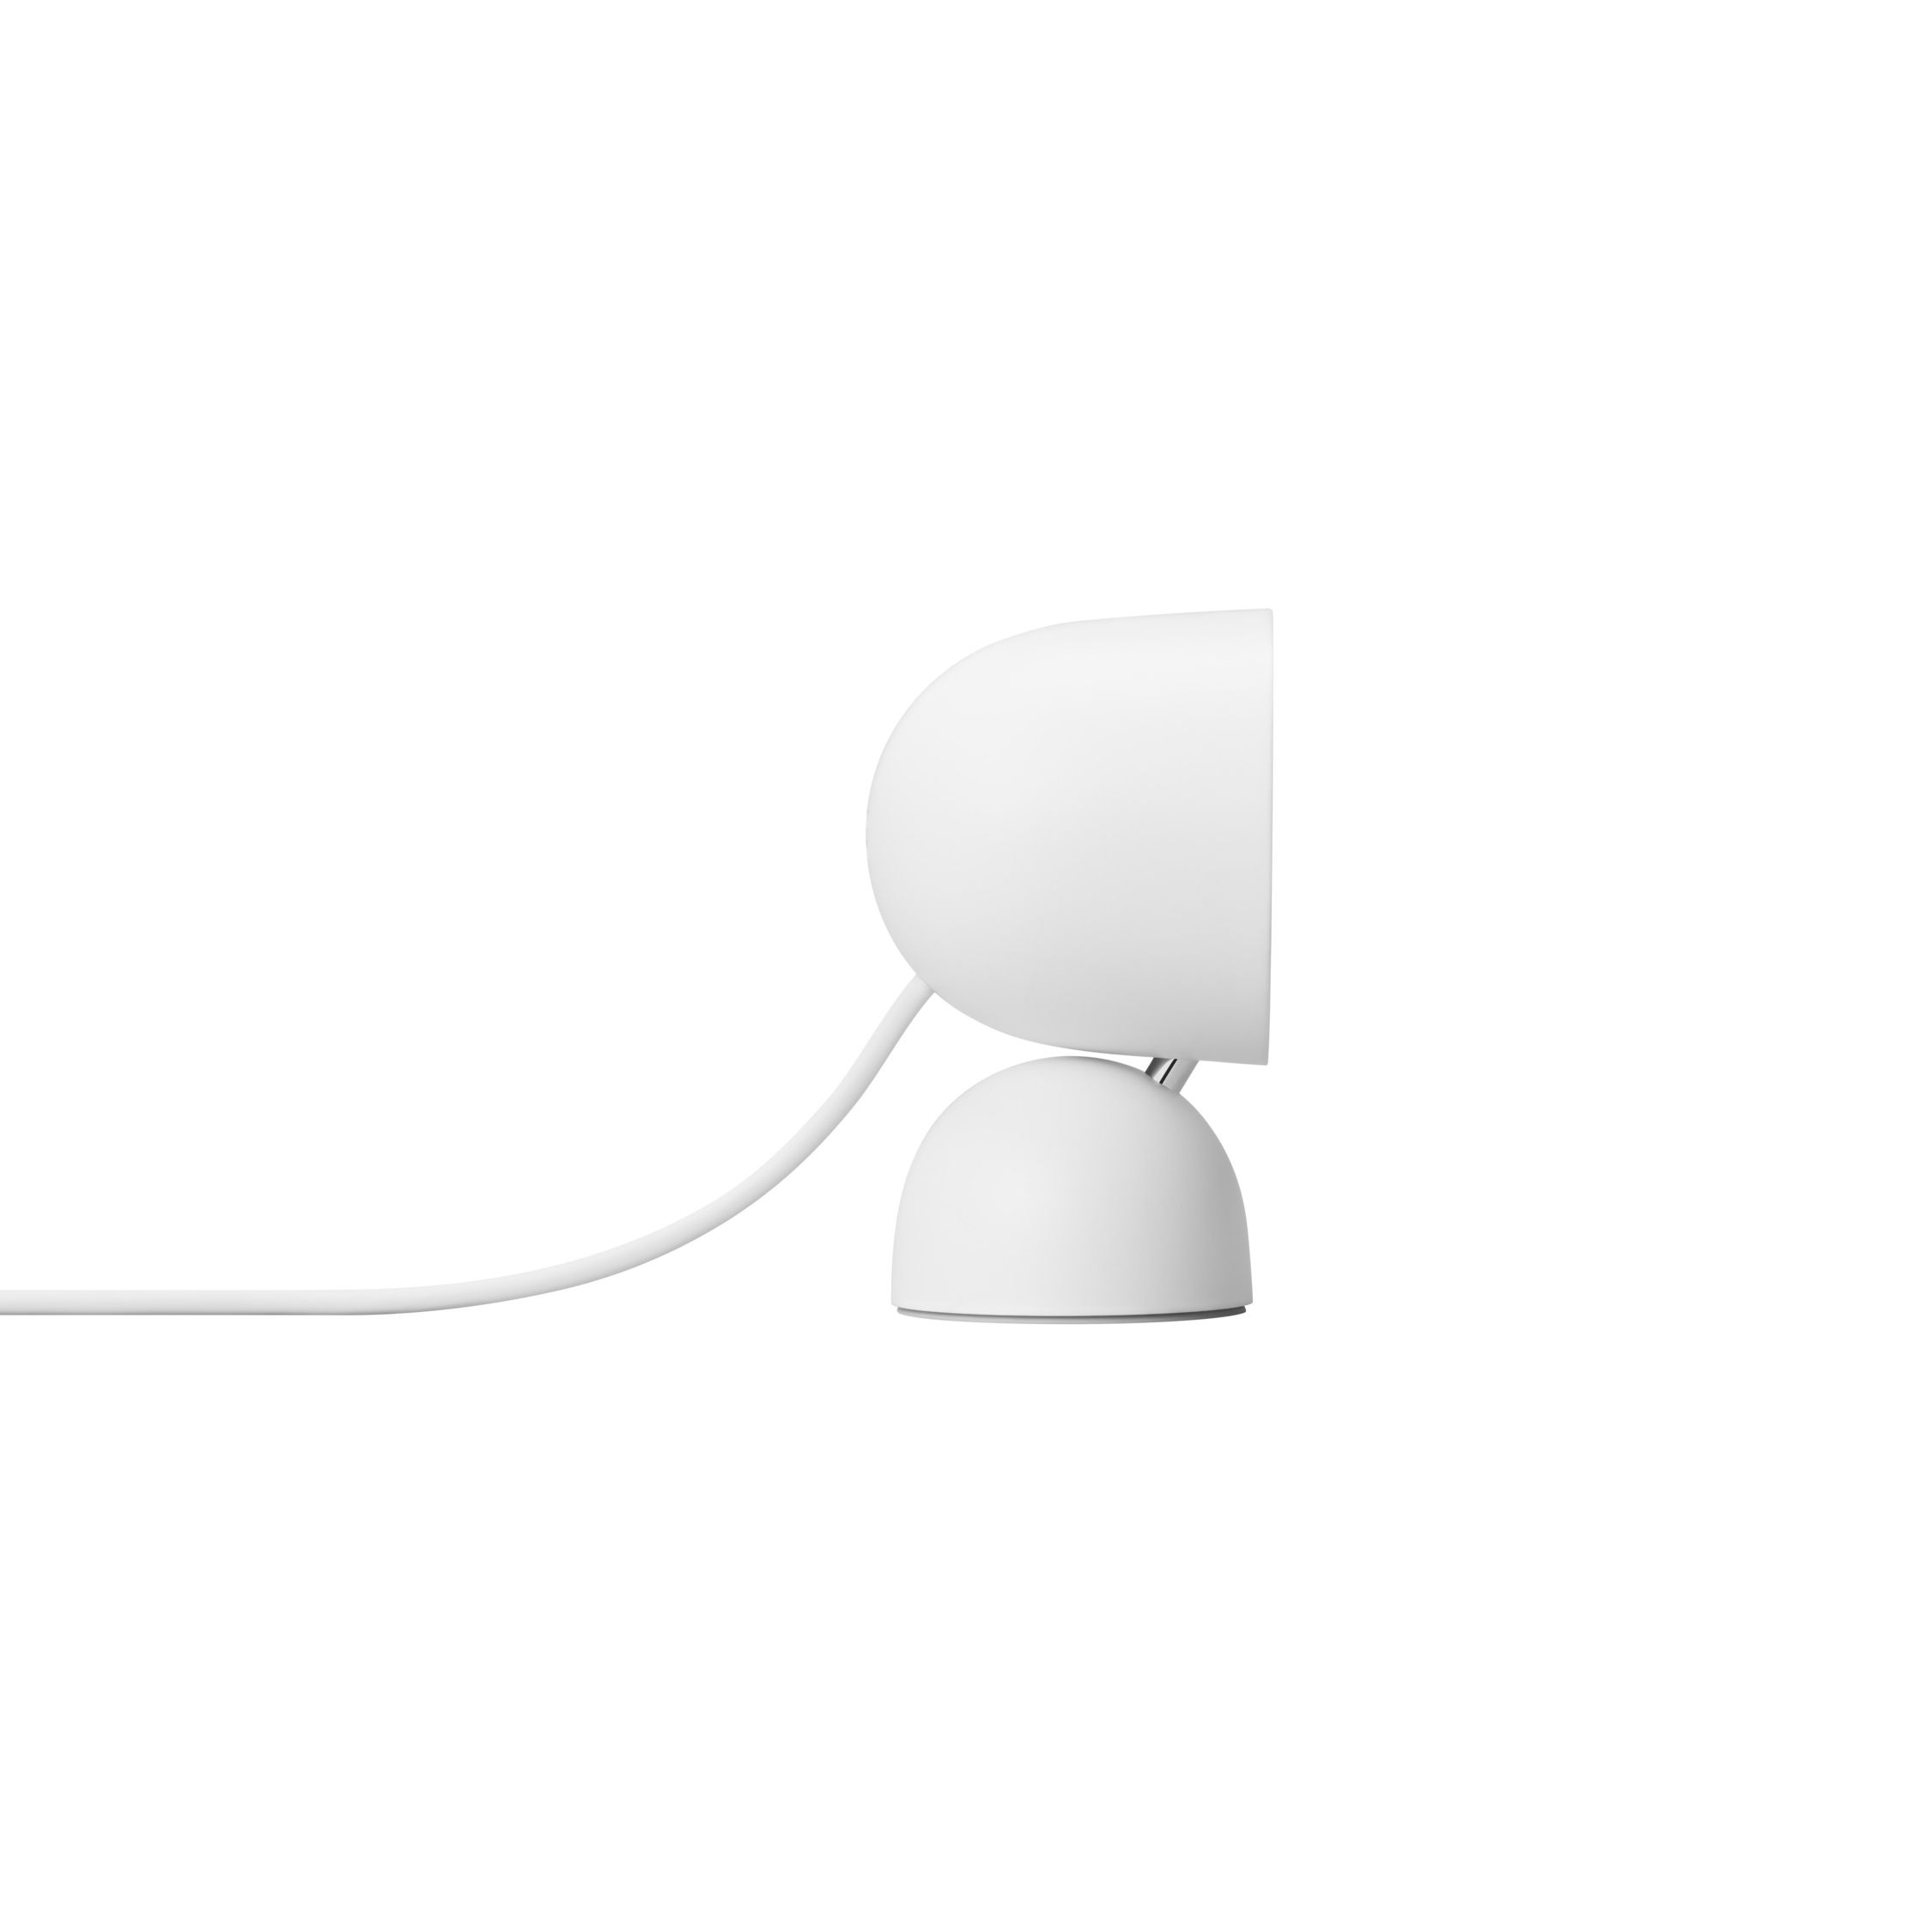 Google Nest Wired Indoor Tilt adjustable Smart camera - White